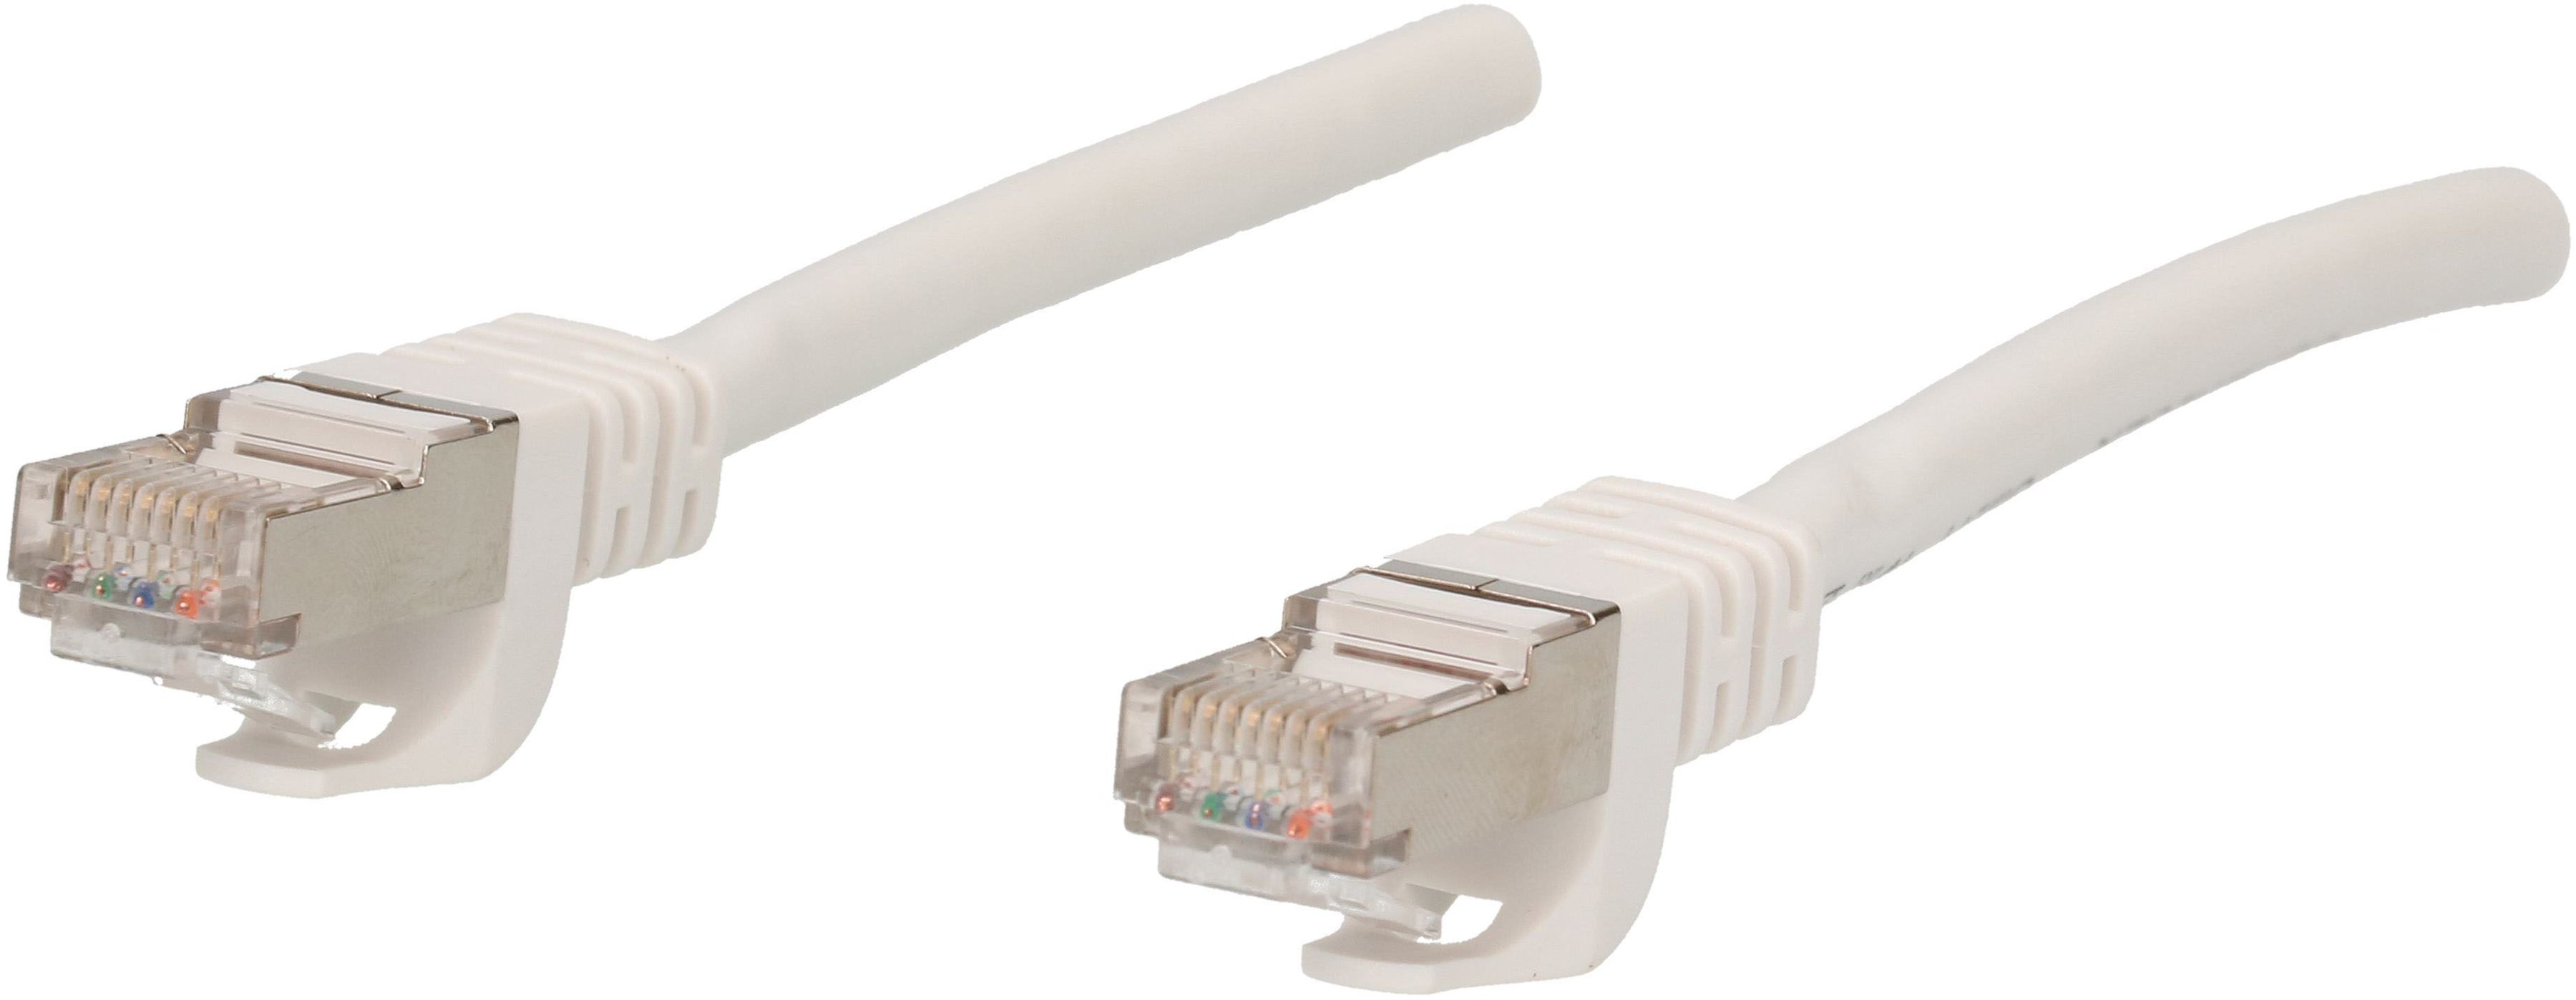 Câble réseau Cat. 6 S/FTP 10m blanc